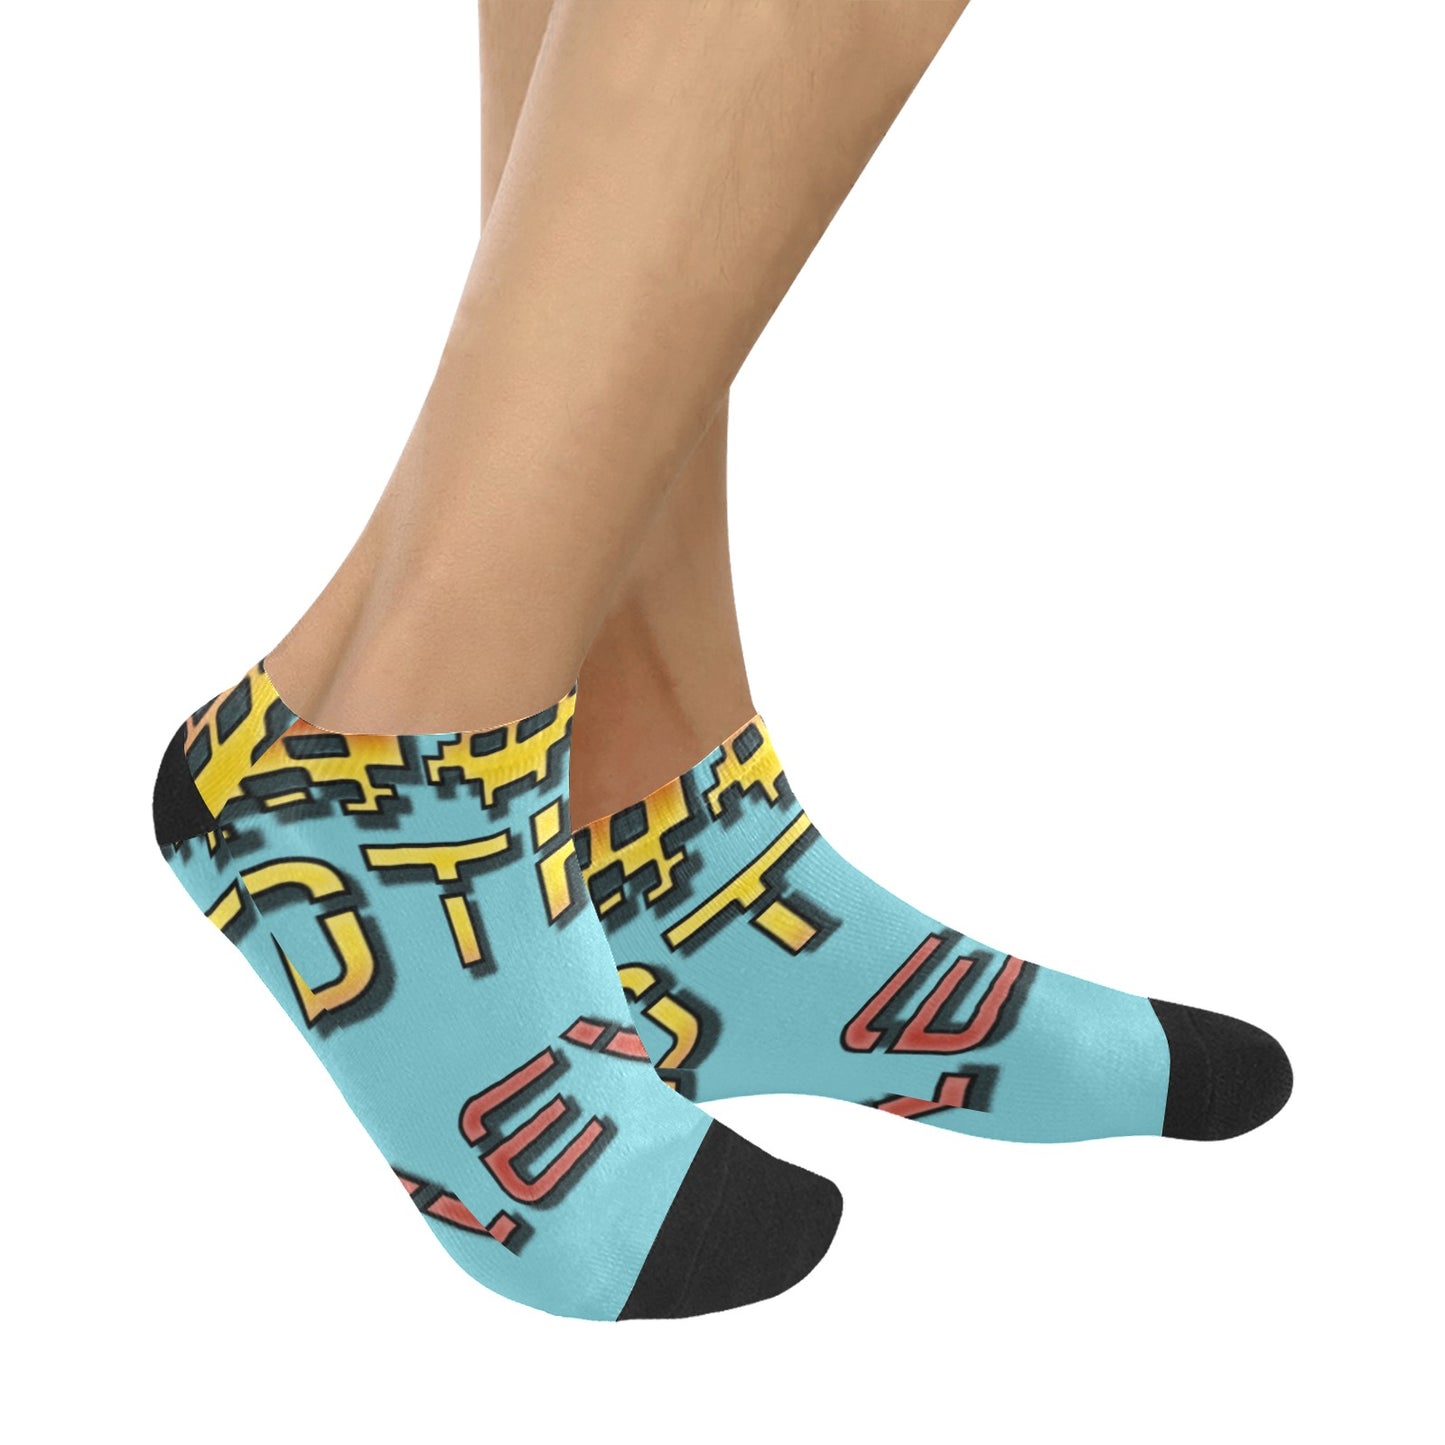 fz men's levels ankle socks one size / fz levels socks - new blue men's ankle socks